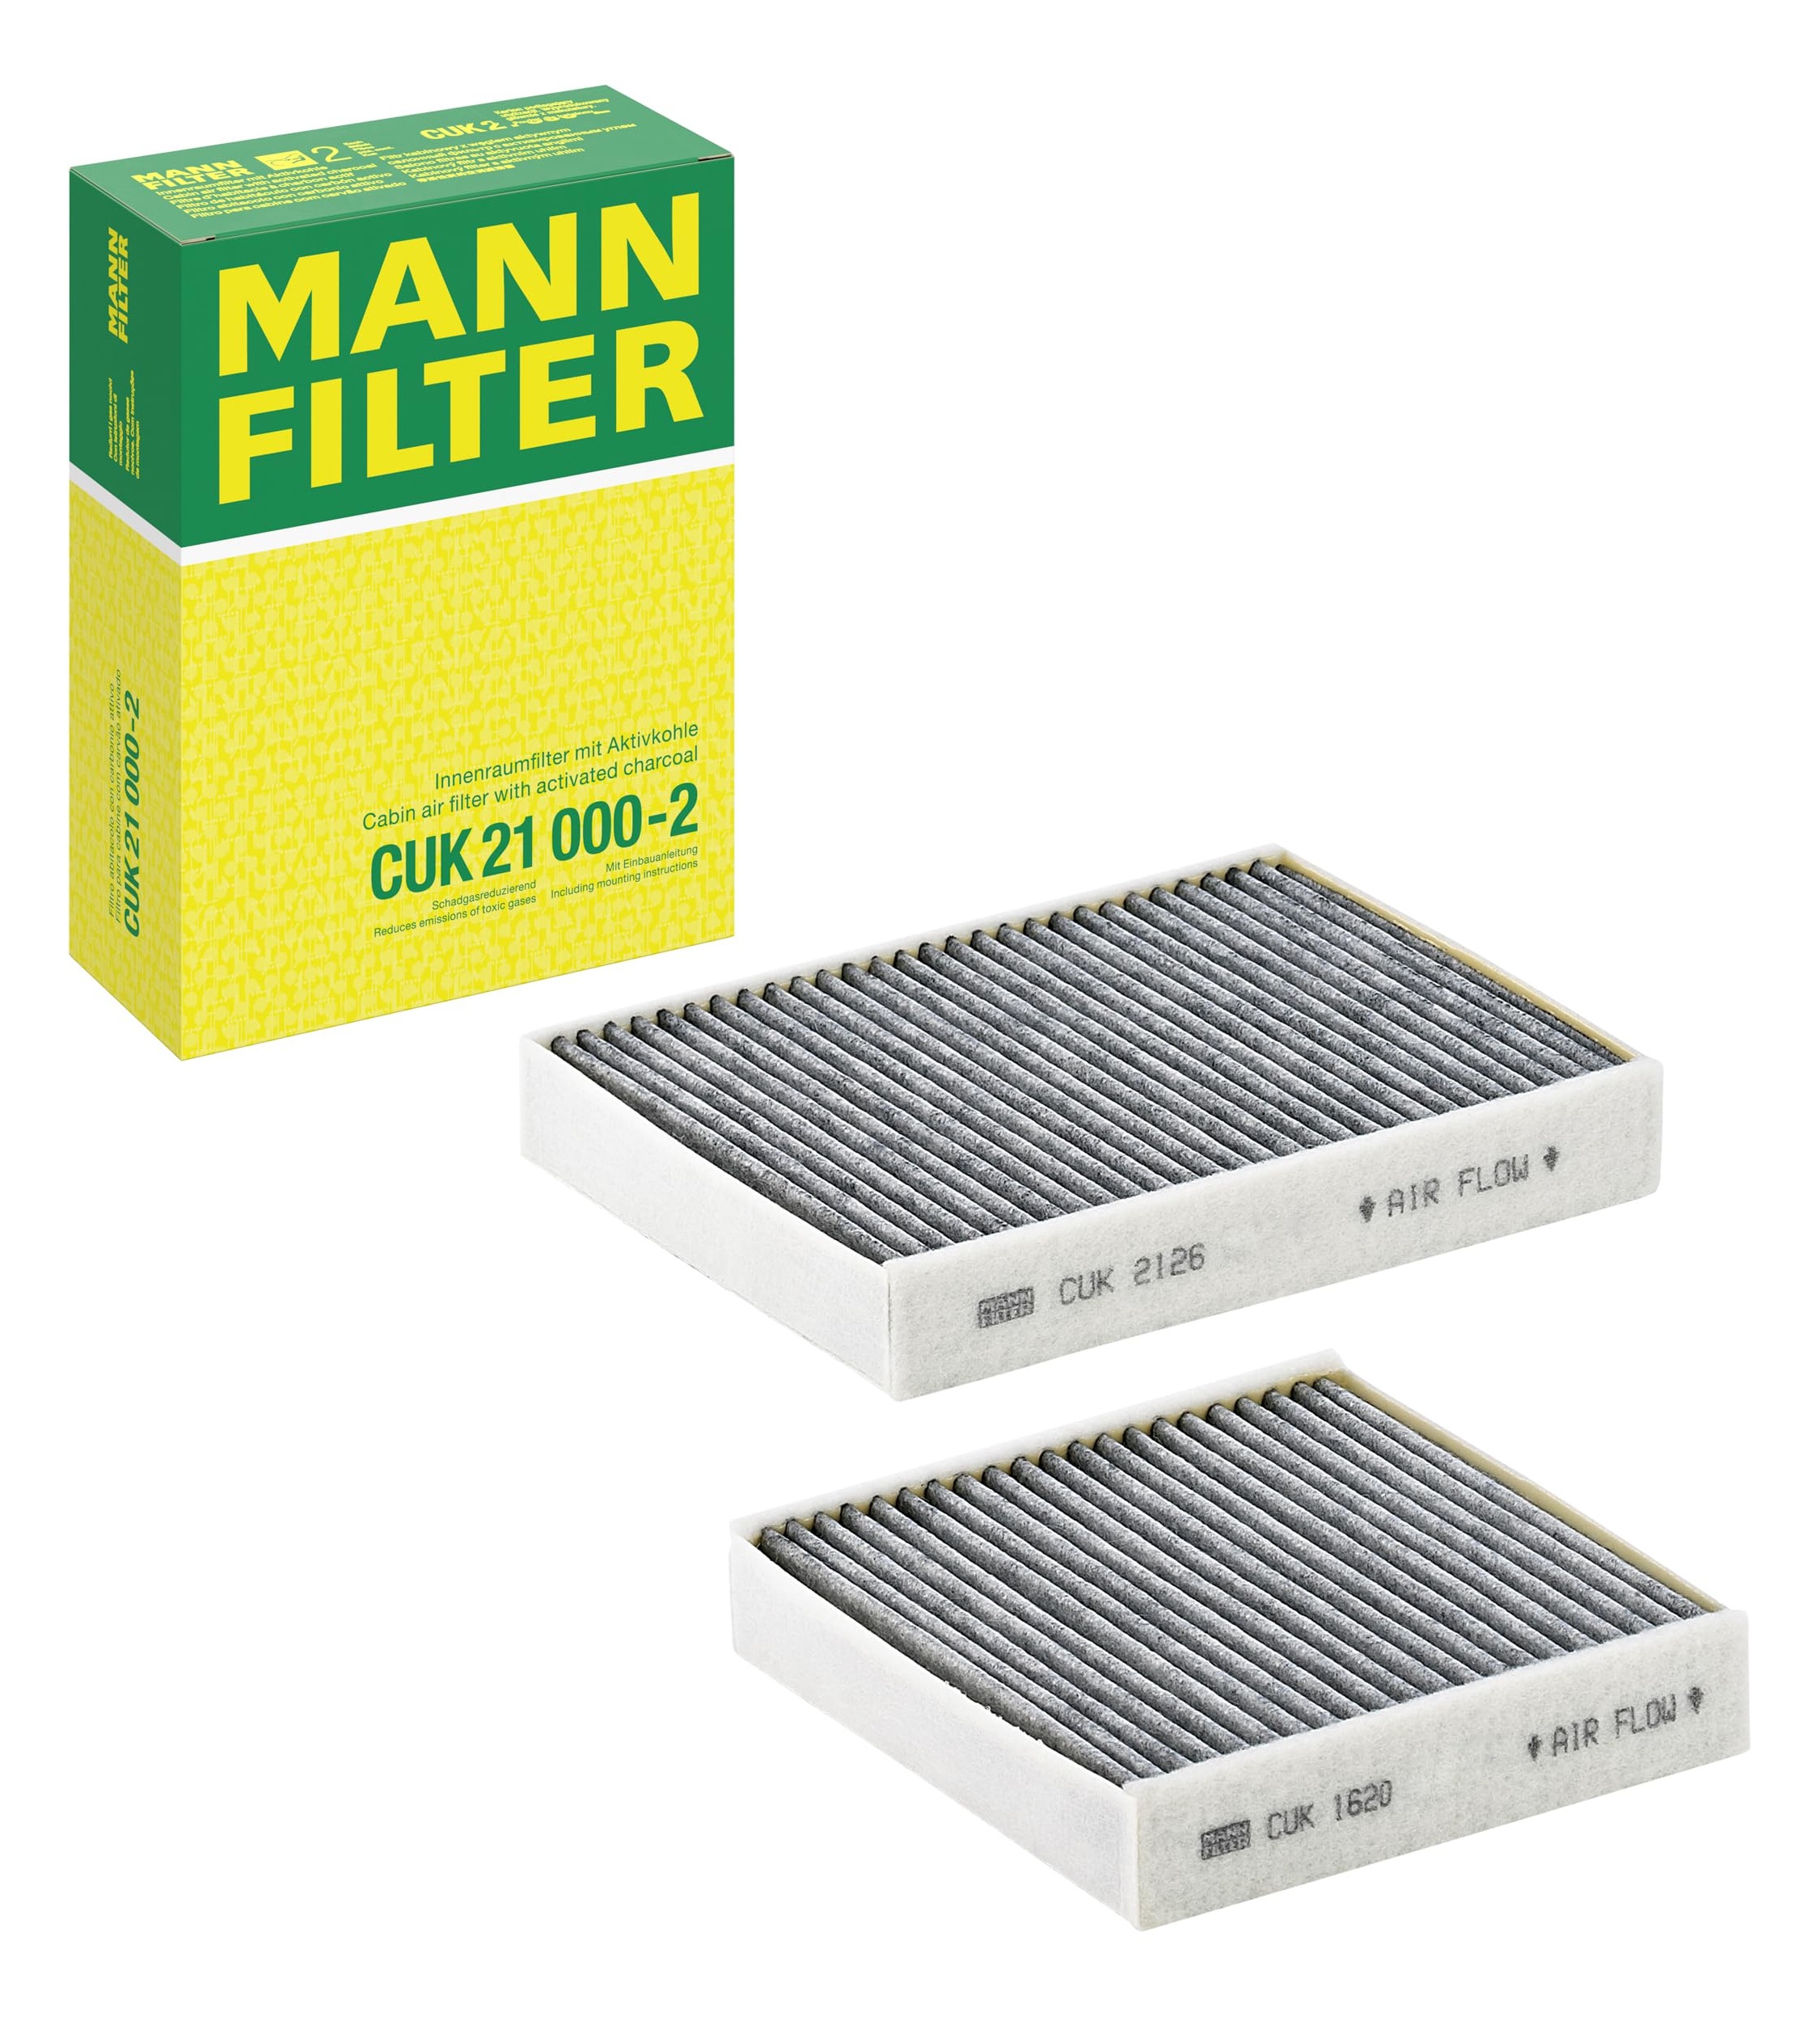 mann filter cuk 21 000-2